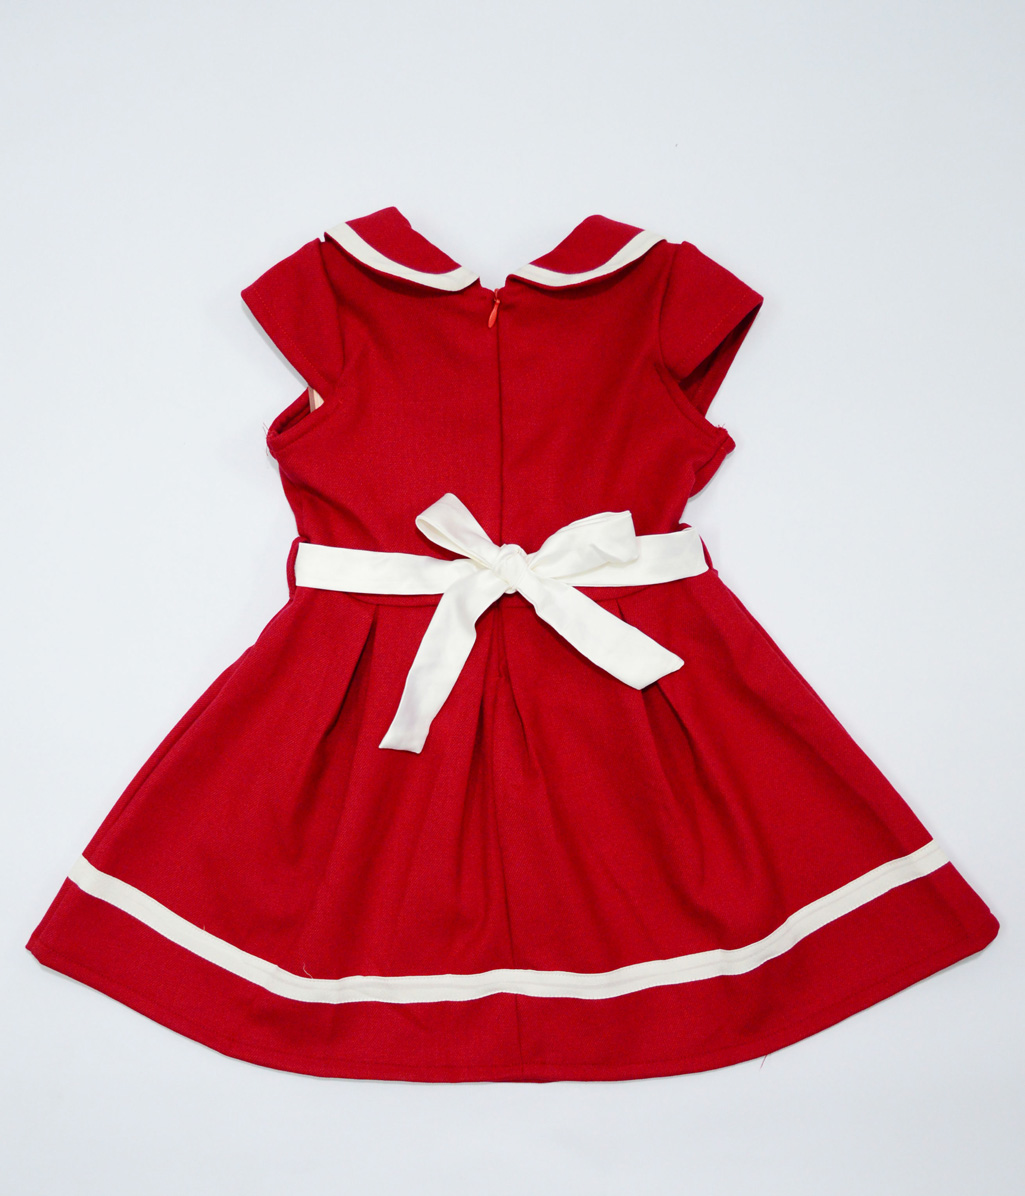 Váy nhung bé gái 111 tuổi màu đỏ đô cổ thủy thủ đính nơ Đầm nhung cho bé  hàng thiết kế chất liệu cao cấp  Giá Sendo khuyến mãi 219000đ 